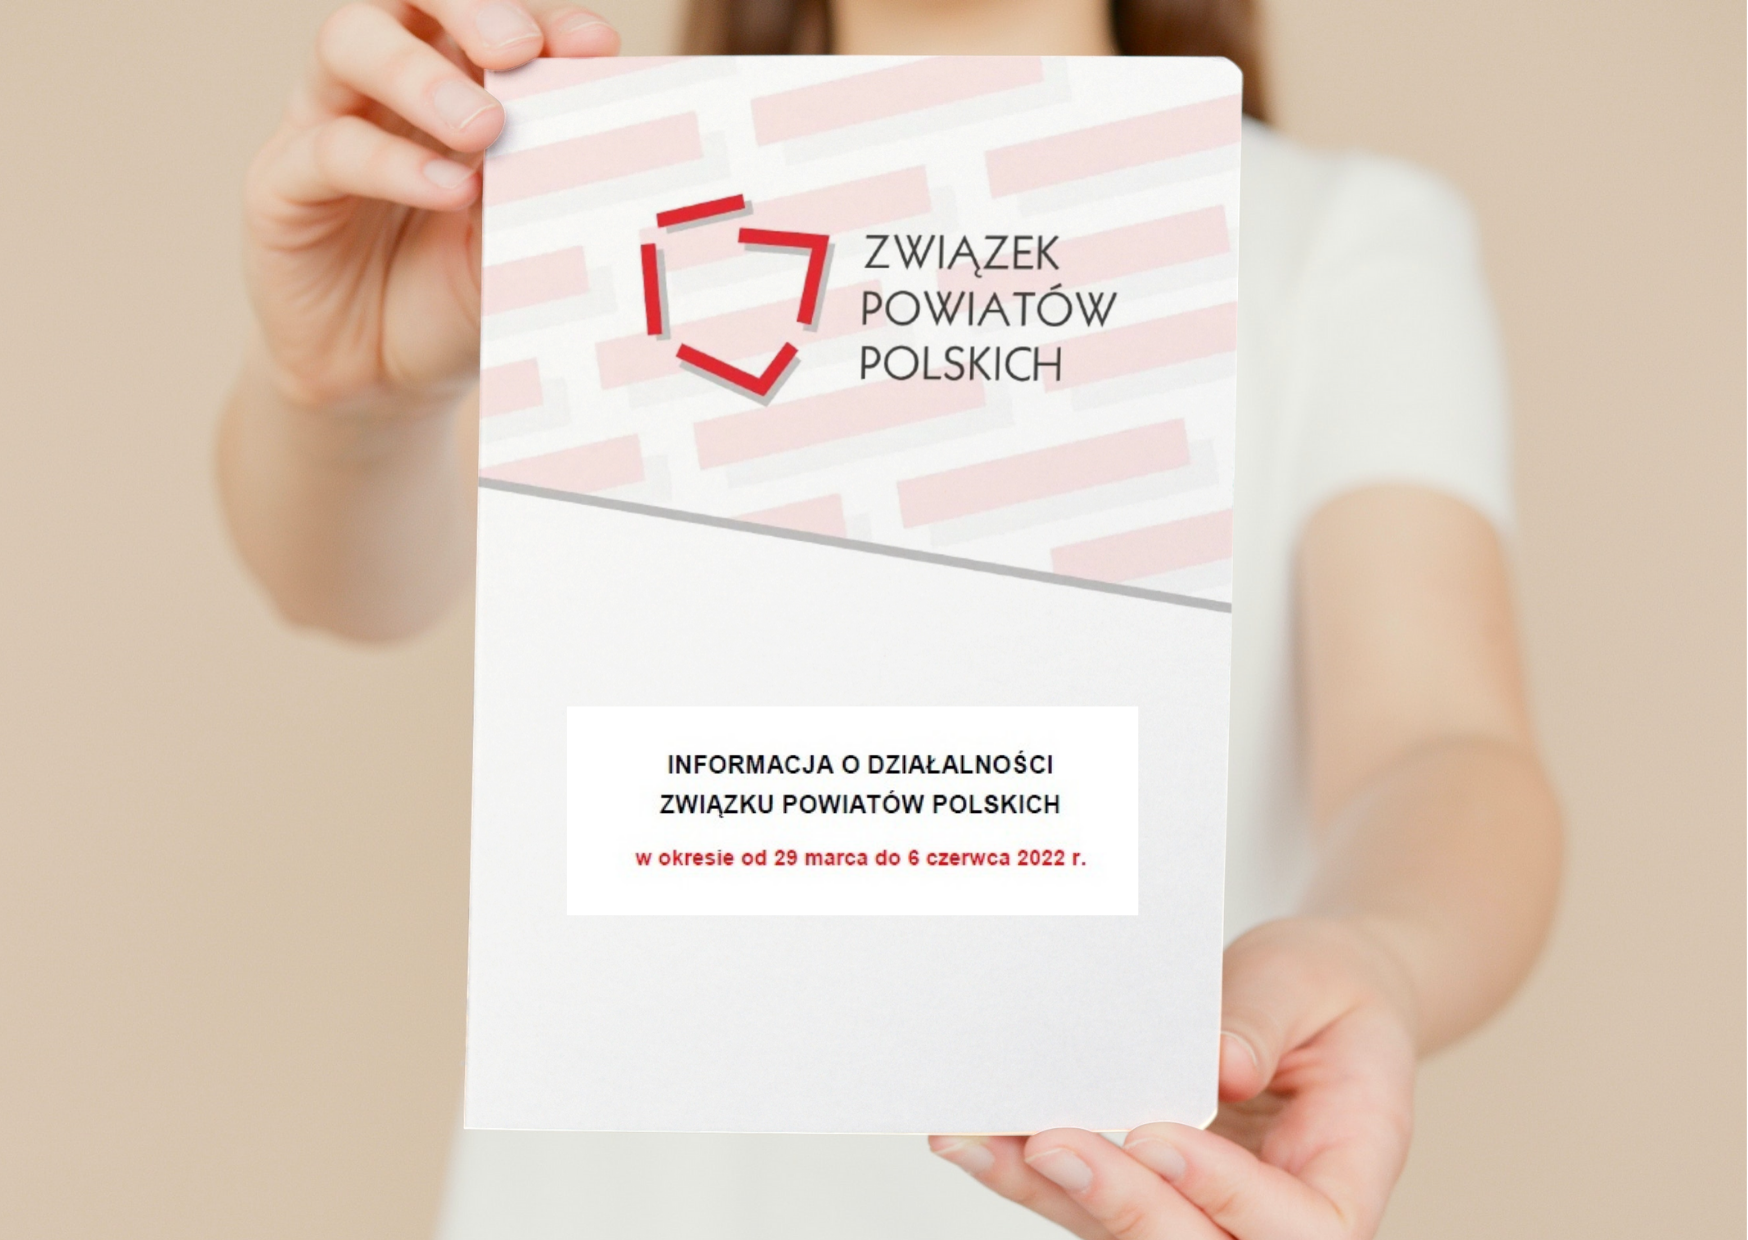 Informacja o działalności ZPP w okresie od 28 marca do 6 czerwca 2022 r.